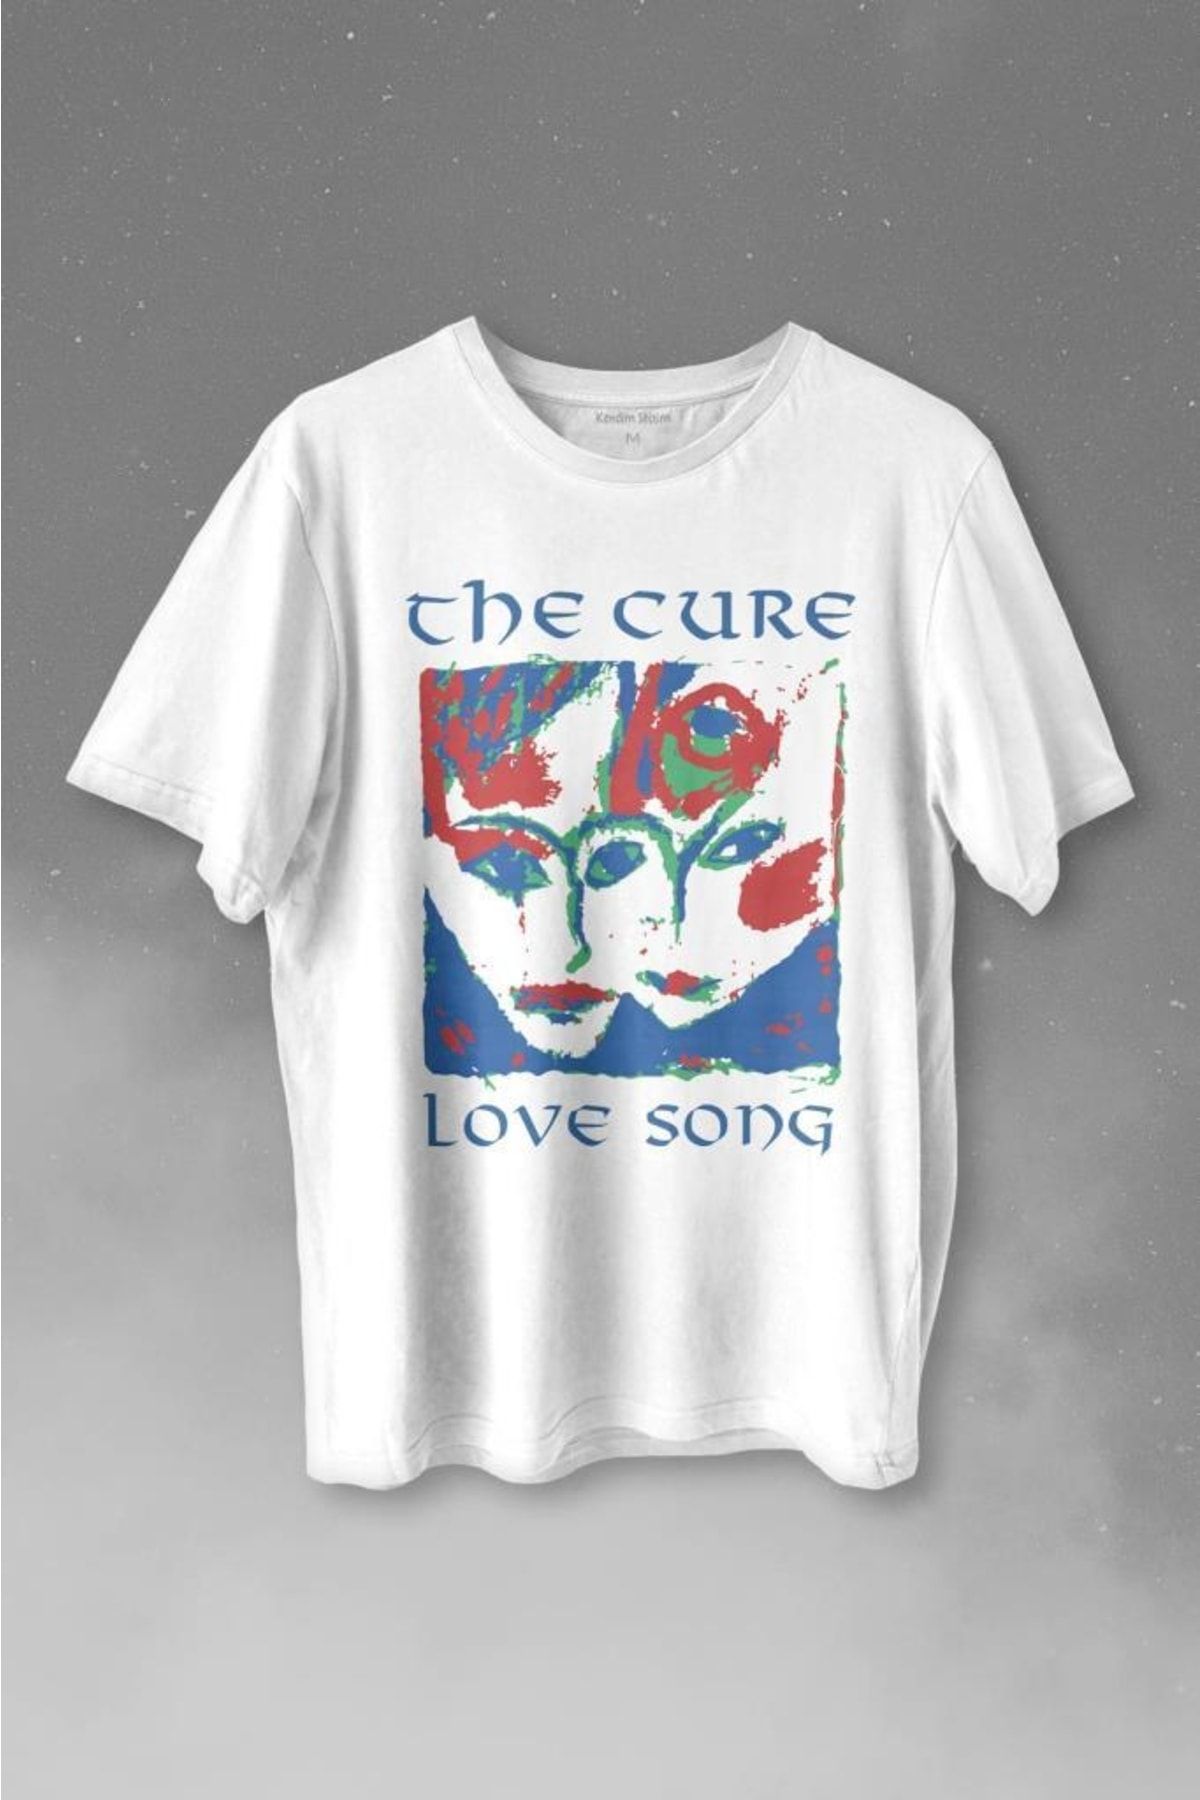 Kendim Seçtim The Cure Lovesong Love Song Rock Music Band Baskılı Tişört  Unisex T-shirt Fiyatı, Yorumları - Trendyol